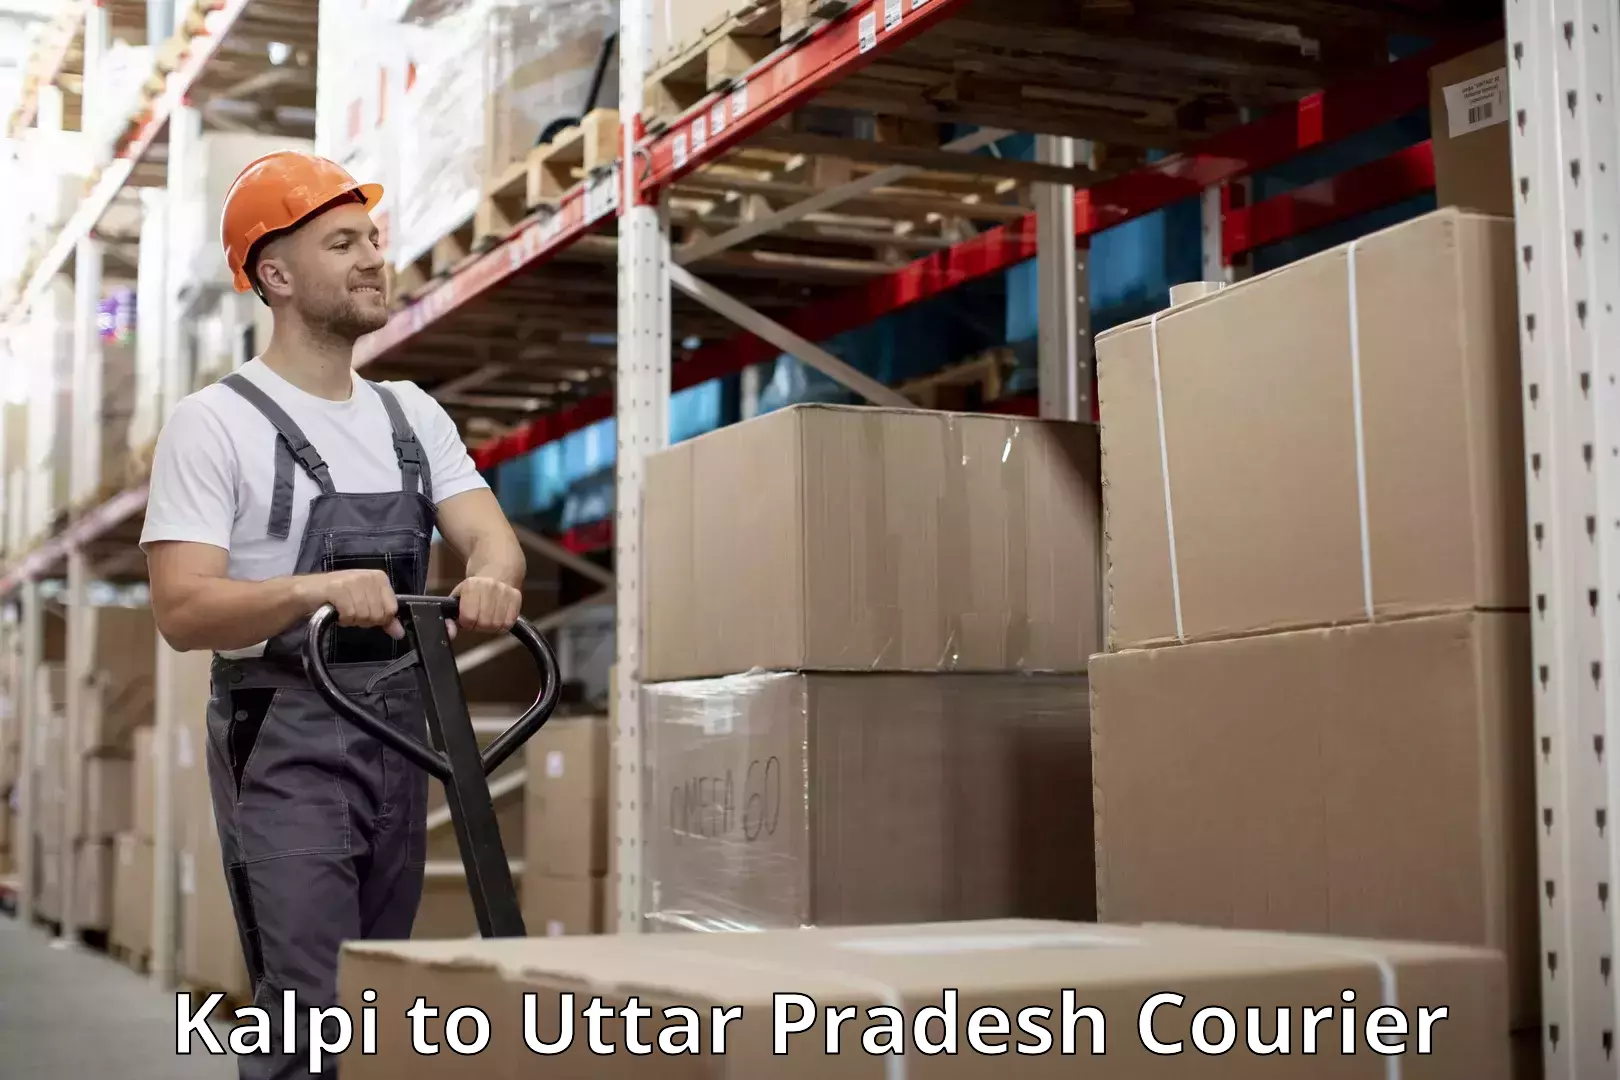 Luggage delivery news Kalpi to Uttar Pradesh